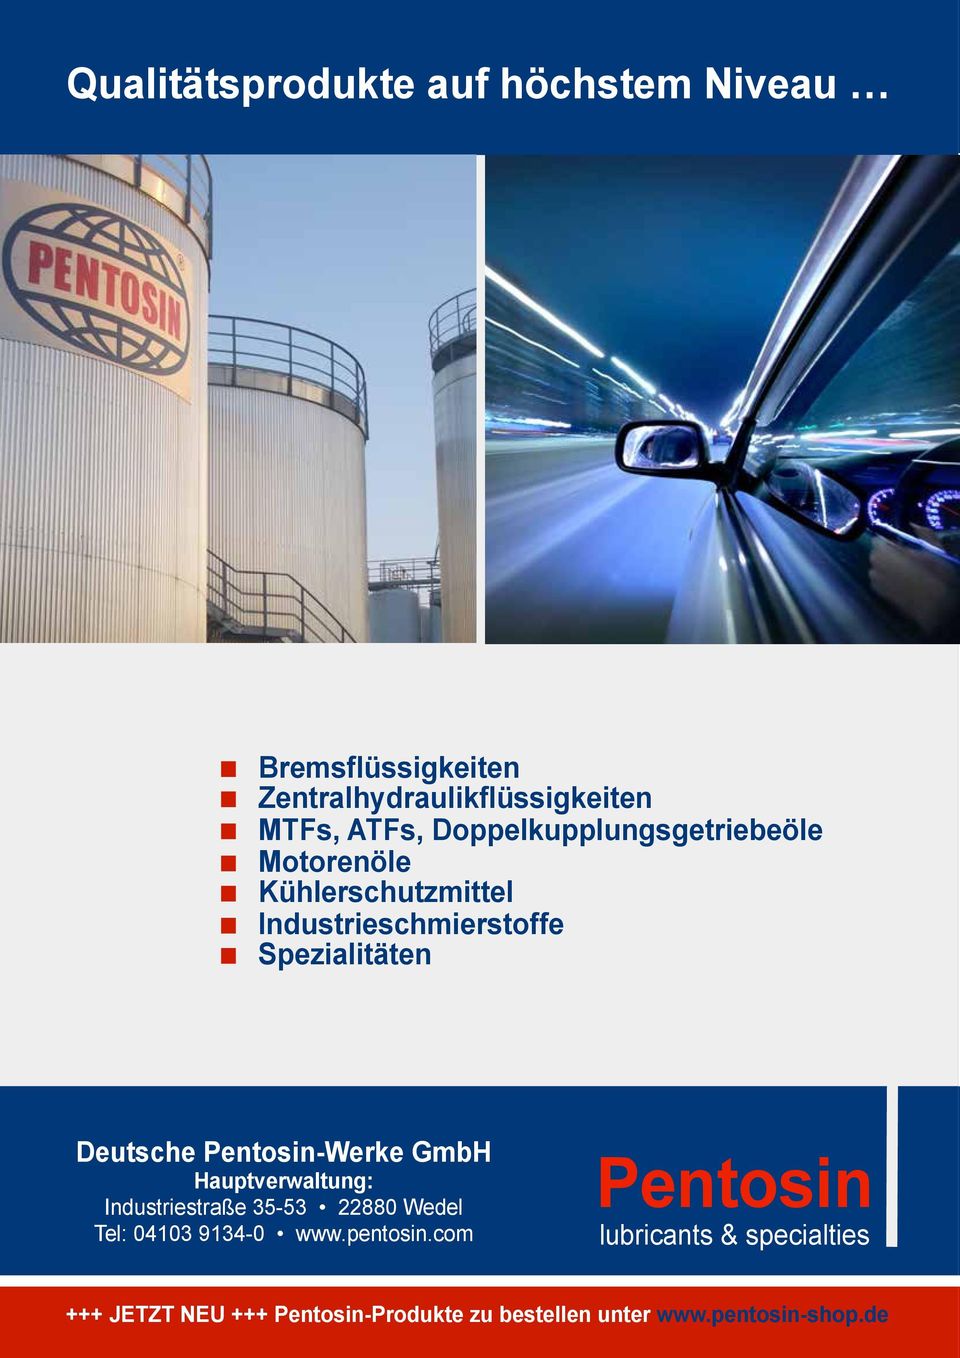 Pentosin-Werke GmbH Hauptverwaltung: Industriestraße 35-53 22880 Wedel Tel: 04103 9134-0 www.pentosin.